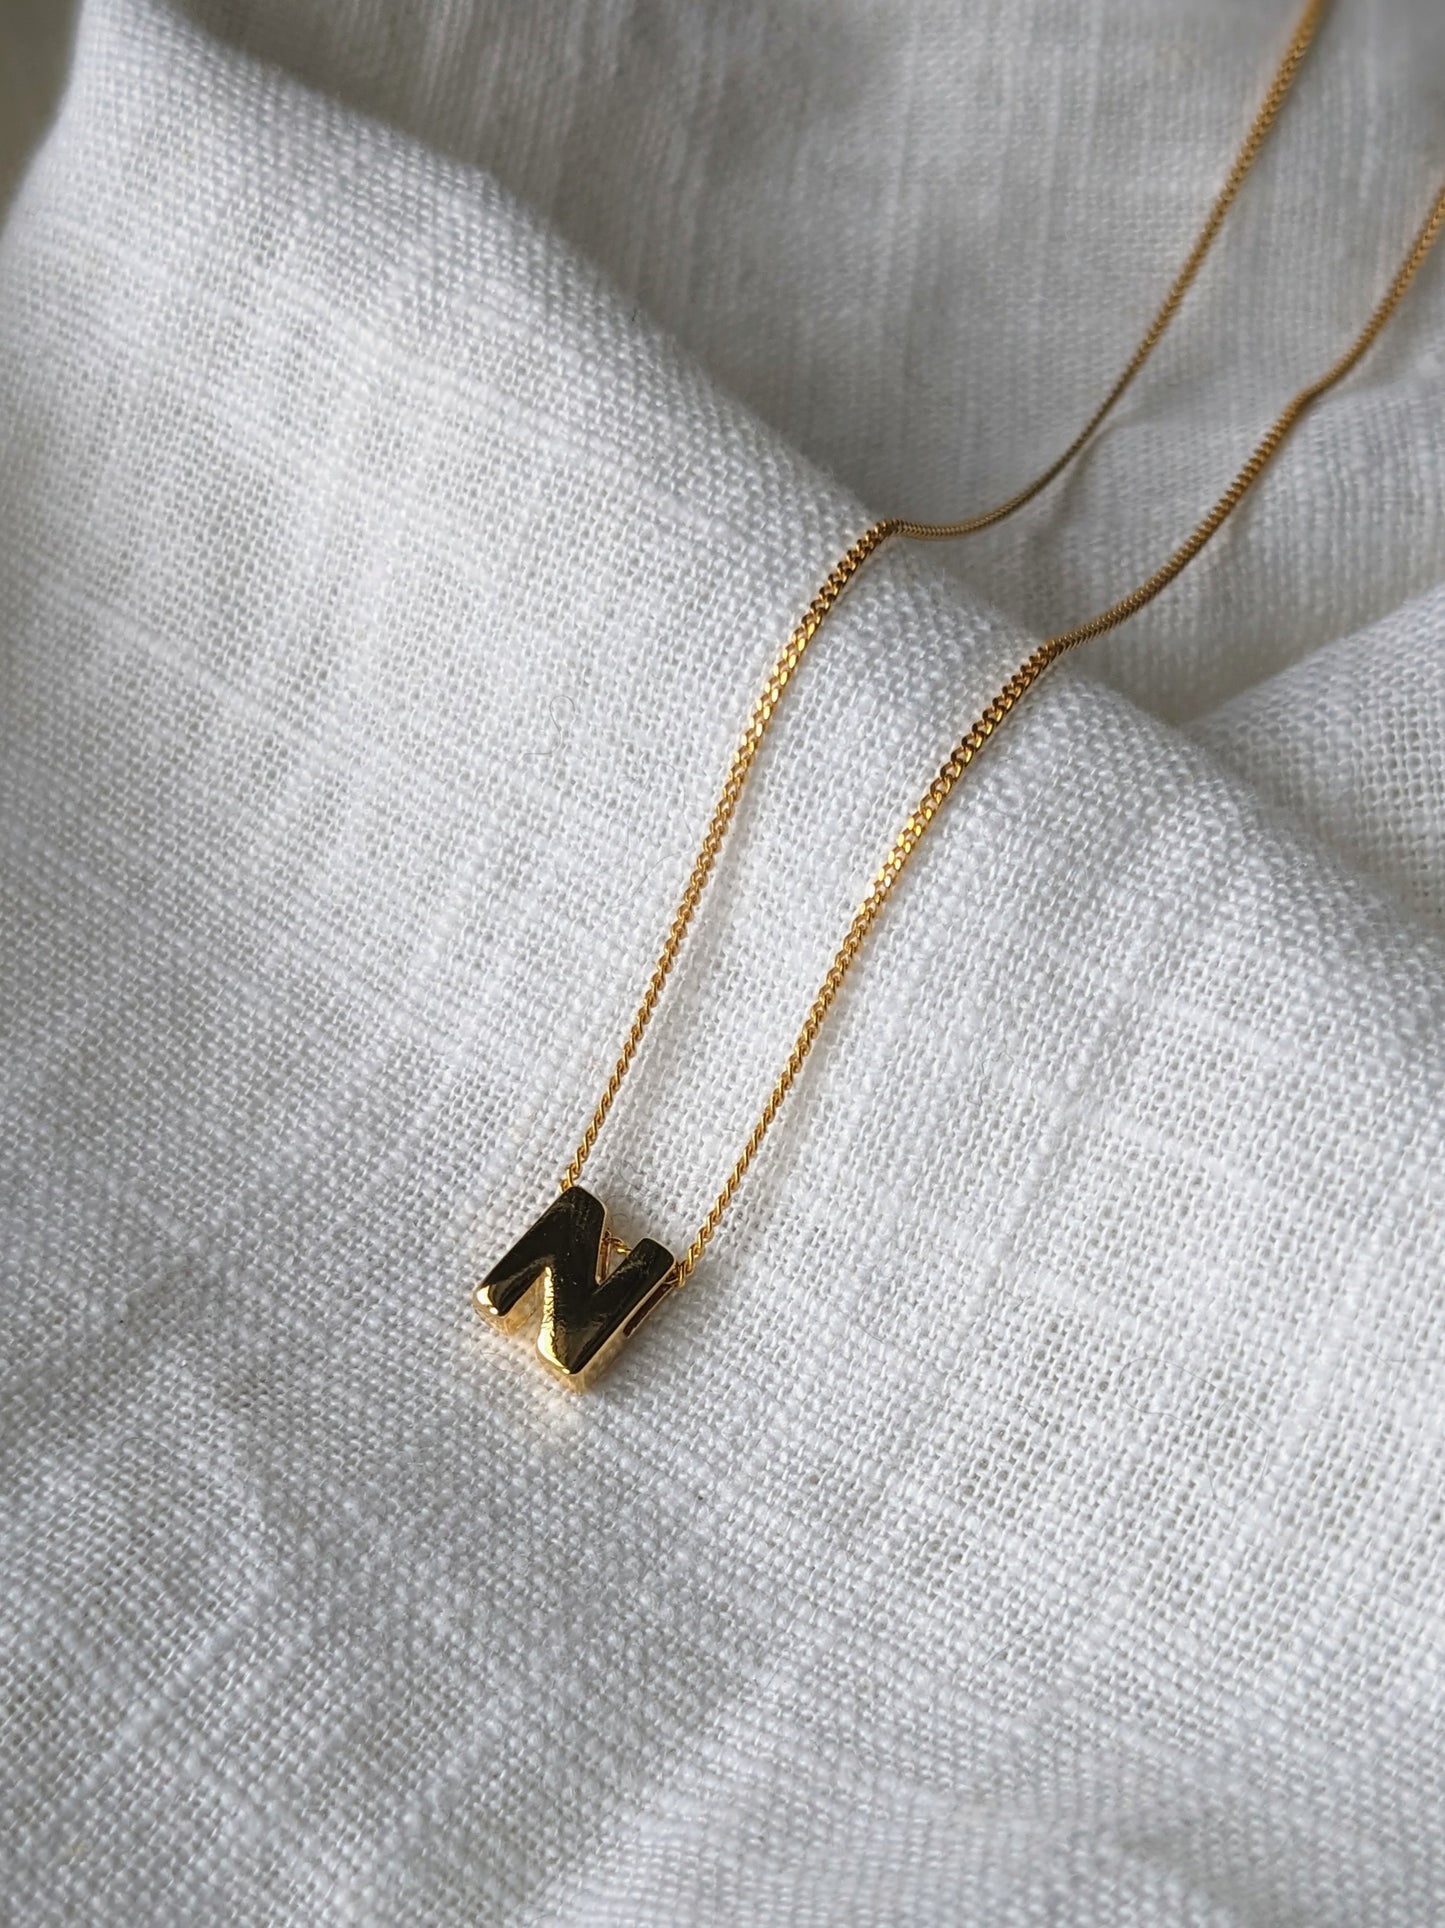 Initial Necklace - 18 Carat Gold Vermeil